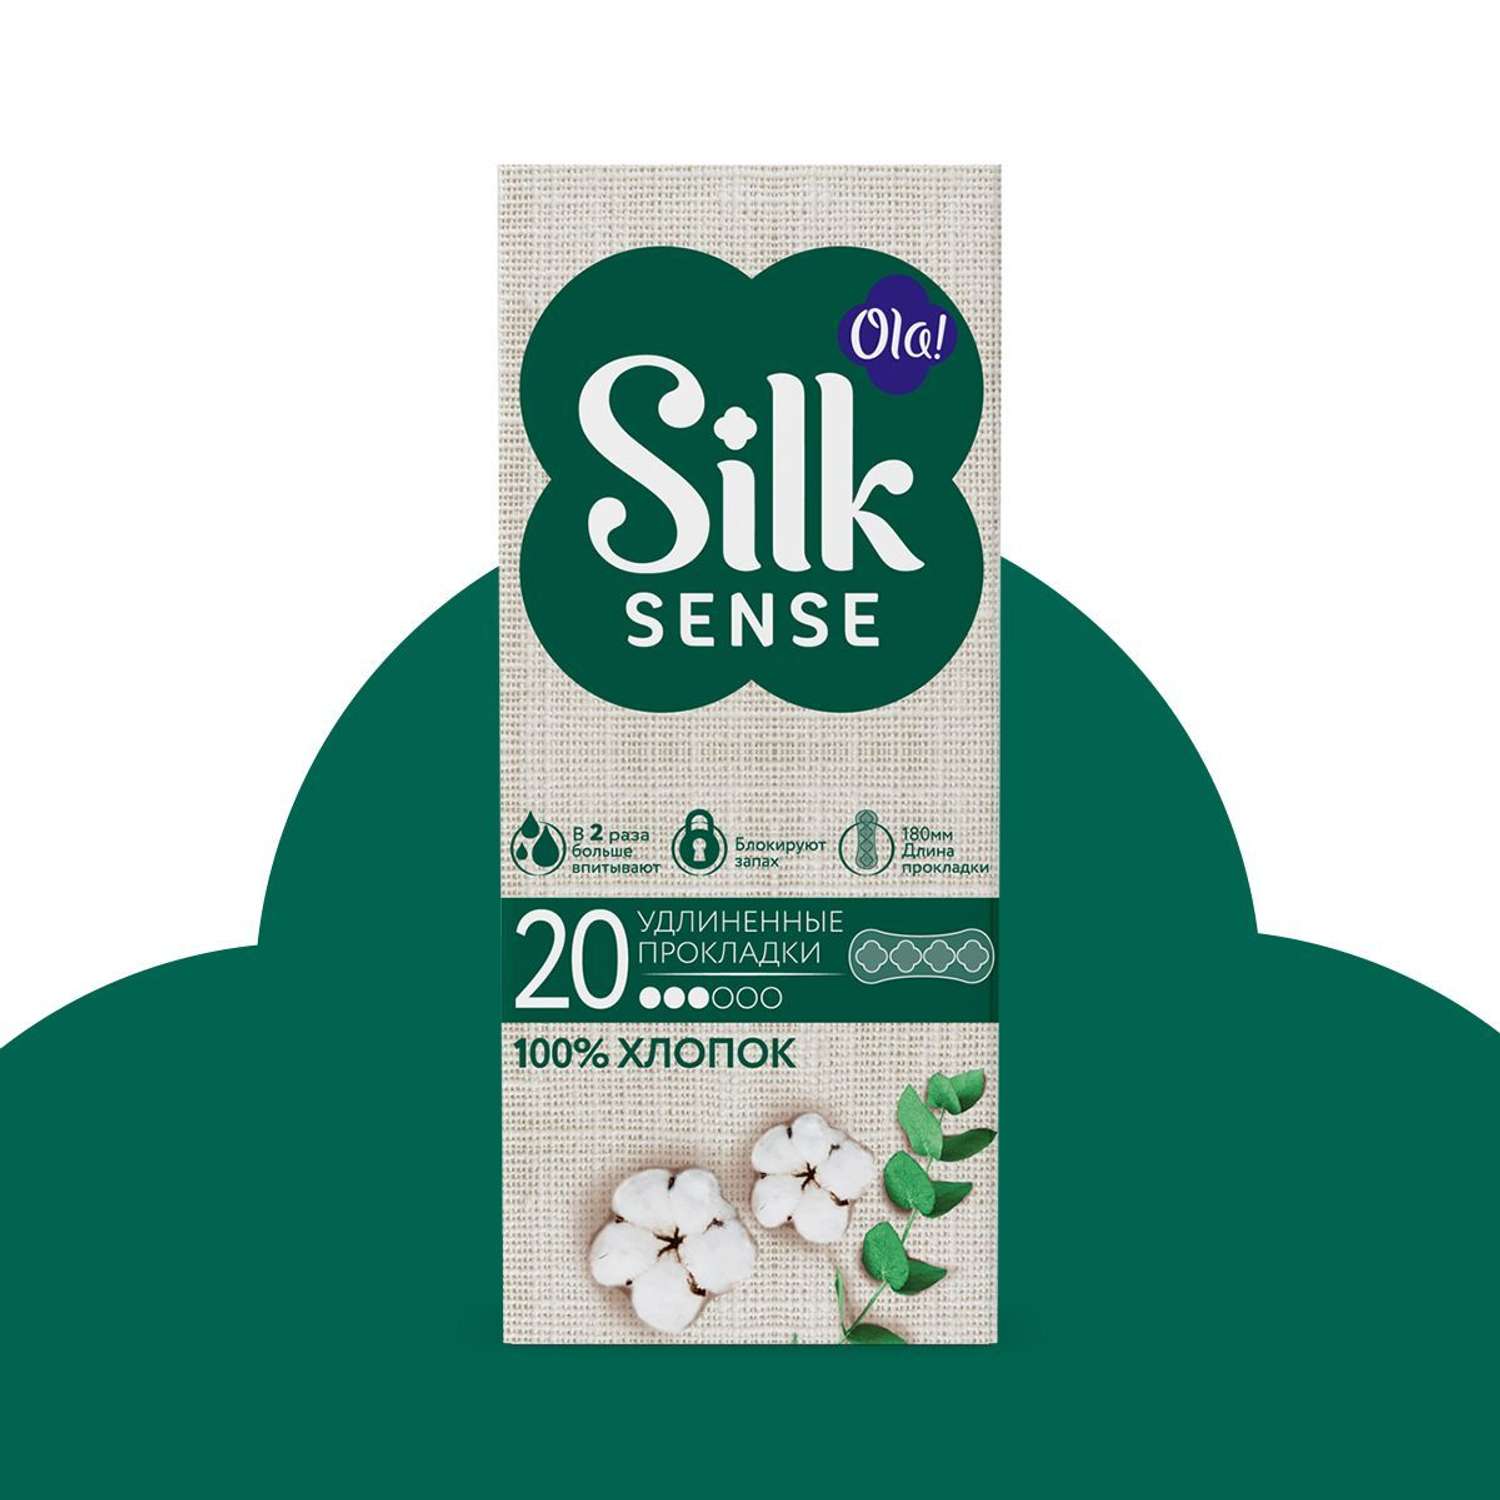 Ежедневные прокладки Ola! Silk Sense удлиненные с хлопковой поверхностью 60 шт 3 уп по 20 шт - фото 2